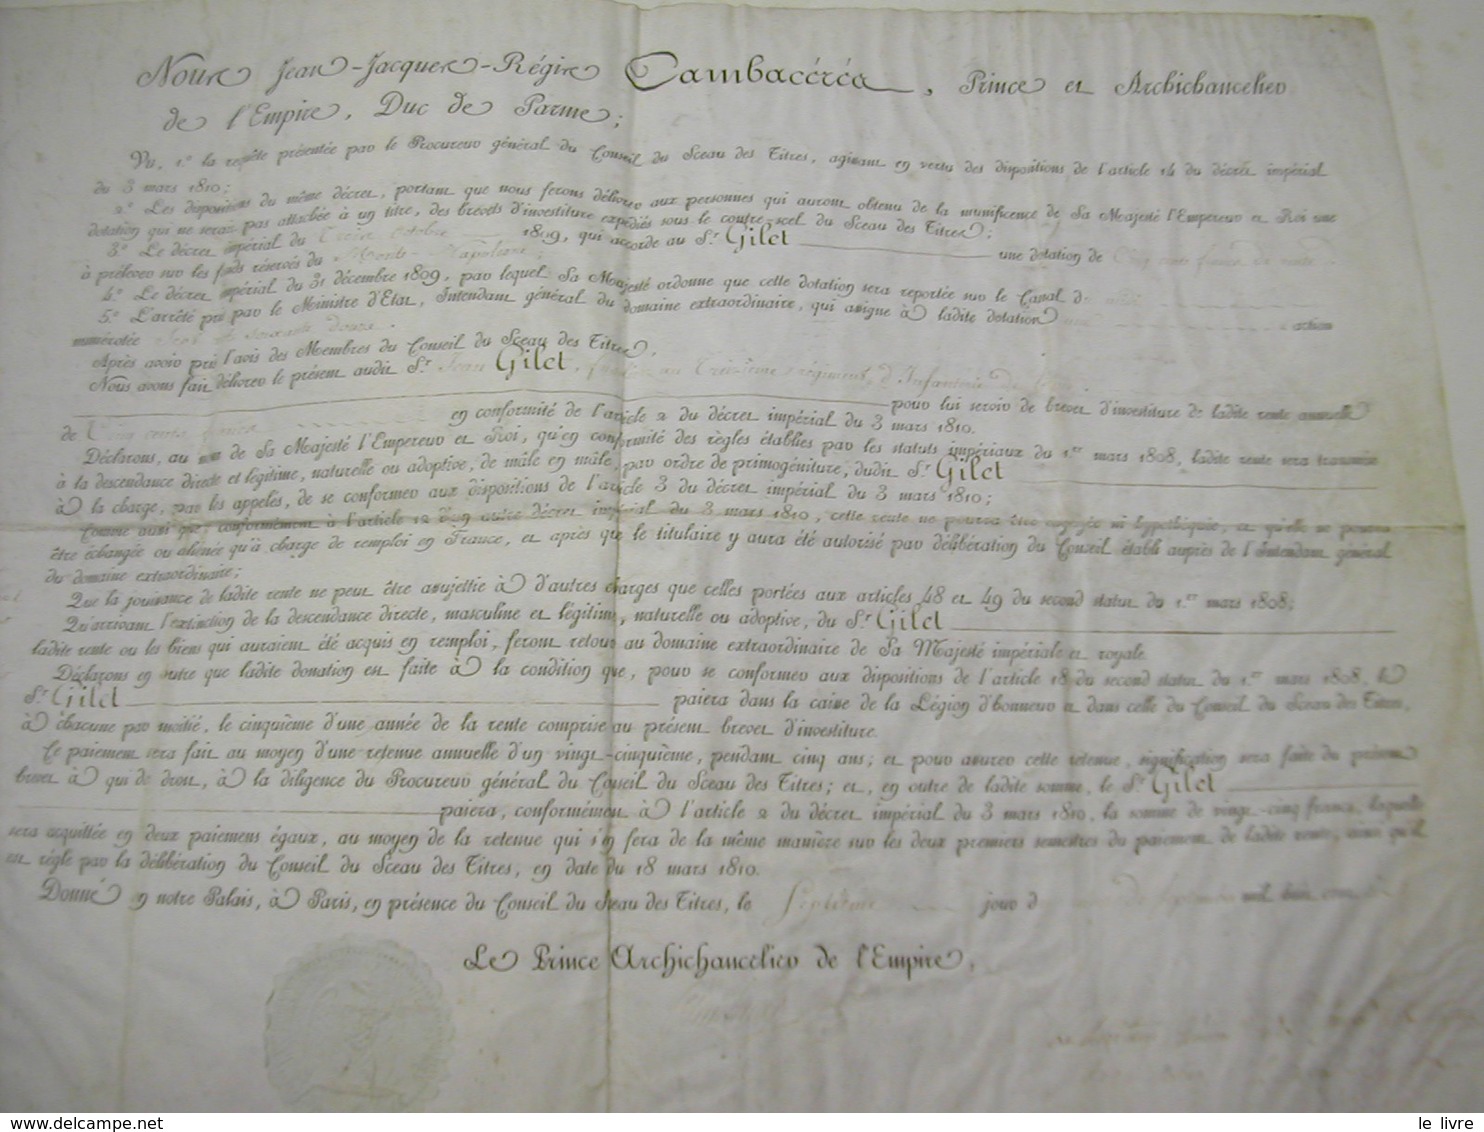 CAMBACERES. BREVET DE RENTE ANNUELLE A UN FUSILIER DU 13 REGIMENT D'INFANTERIE DE LIGNE 1810